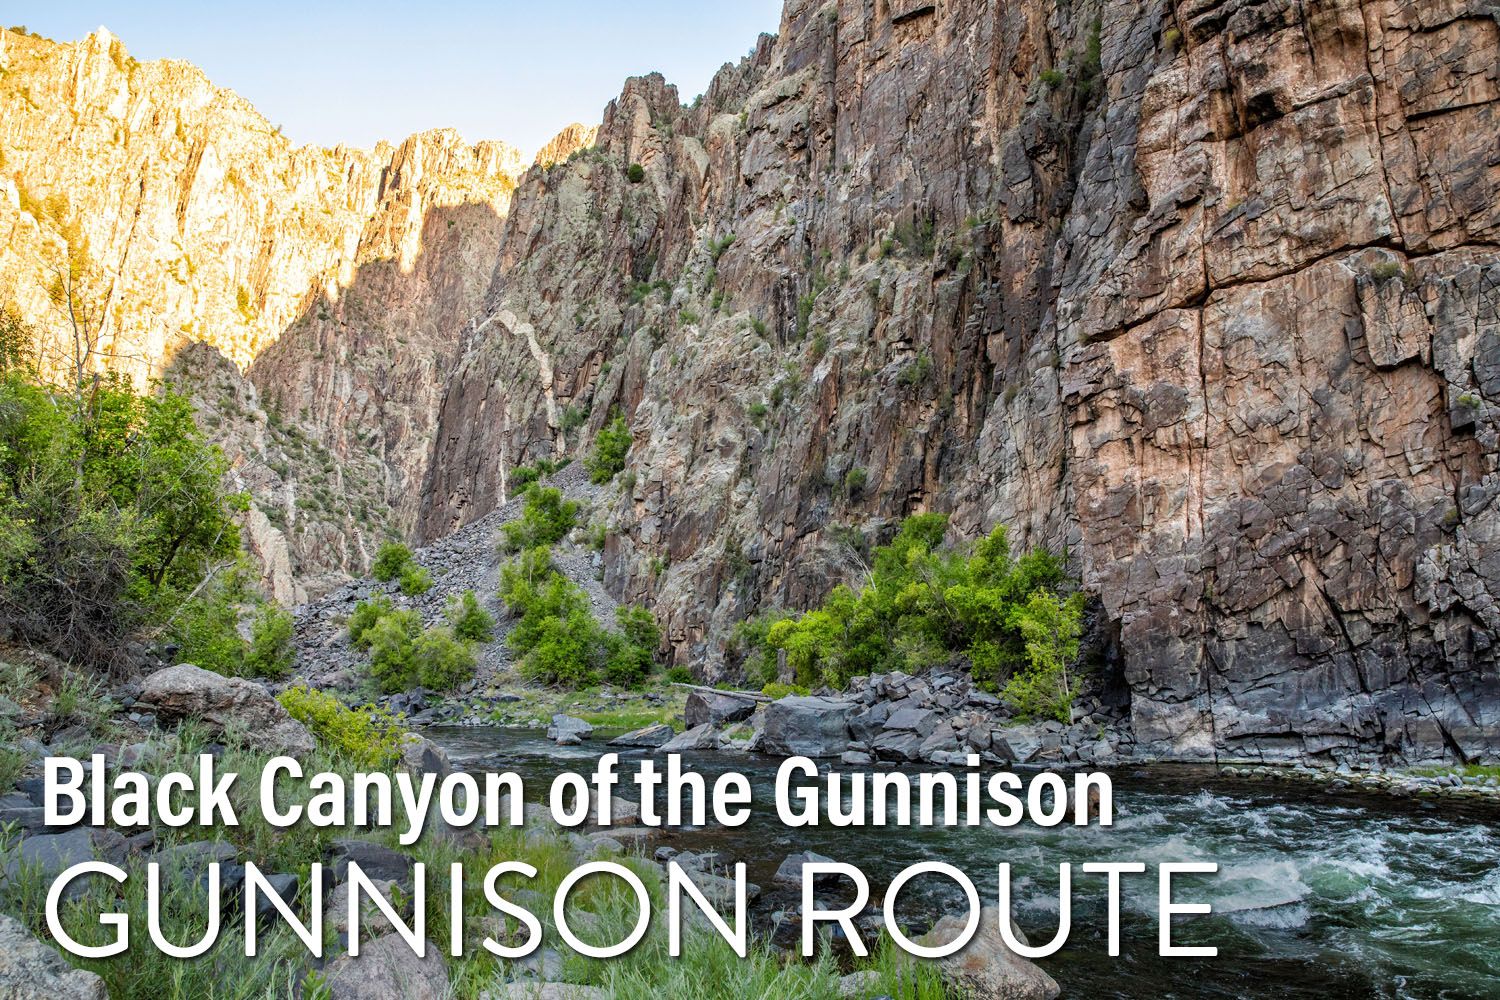 Gunnison Route